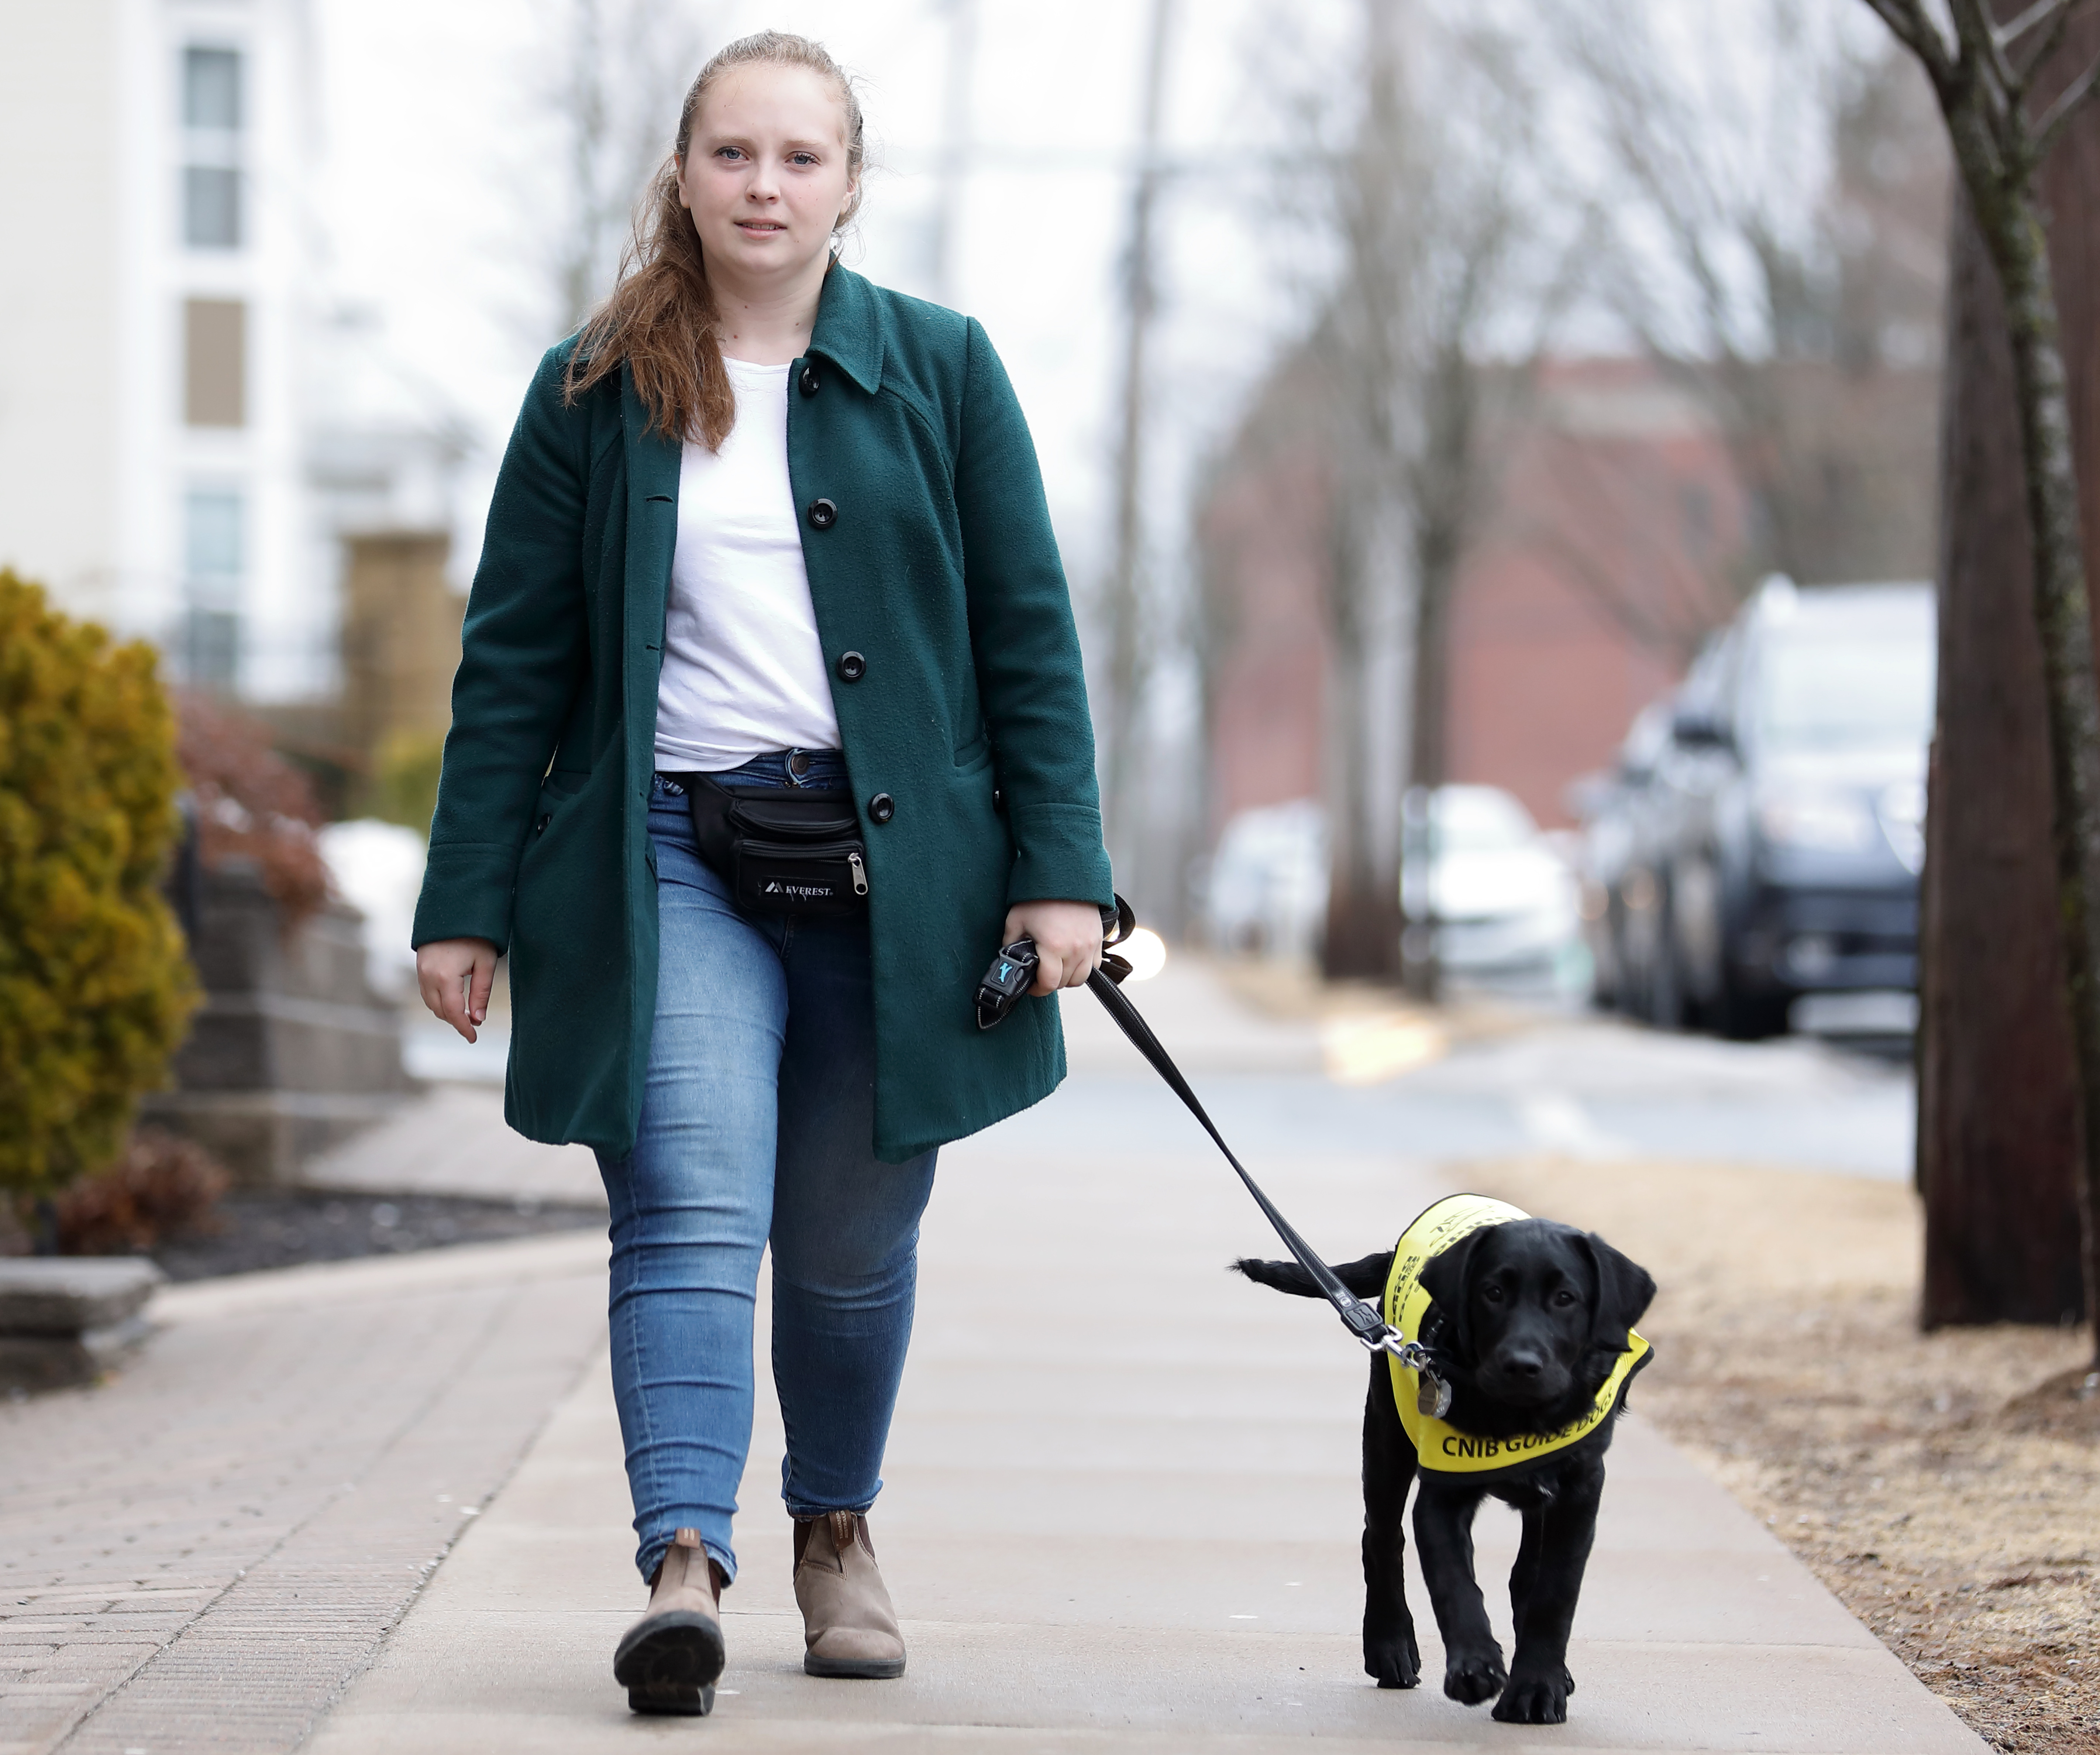 Maja marche sur un trottoir en direction de l'appareil photo, tenant la laisse de Lily qui marche à ses côtés; Lily est jeune labrador noire croisée golden retriever, portant un gilet jaune vif de futur chien-guide